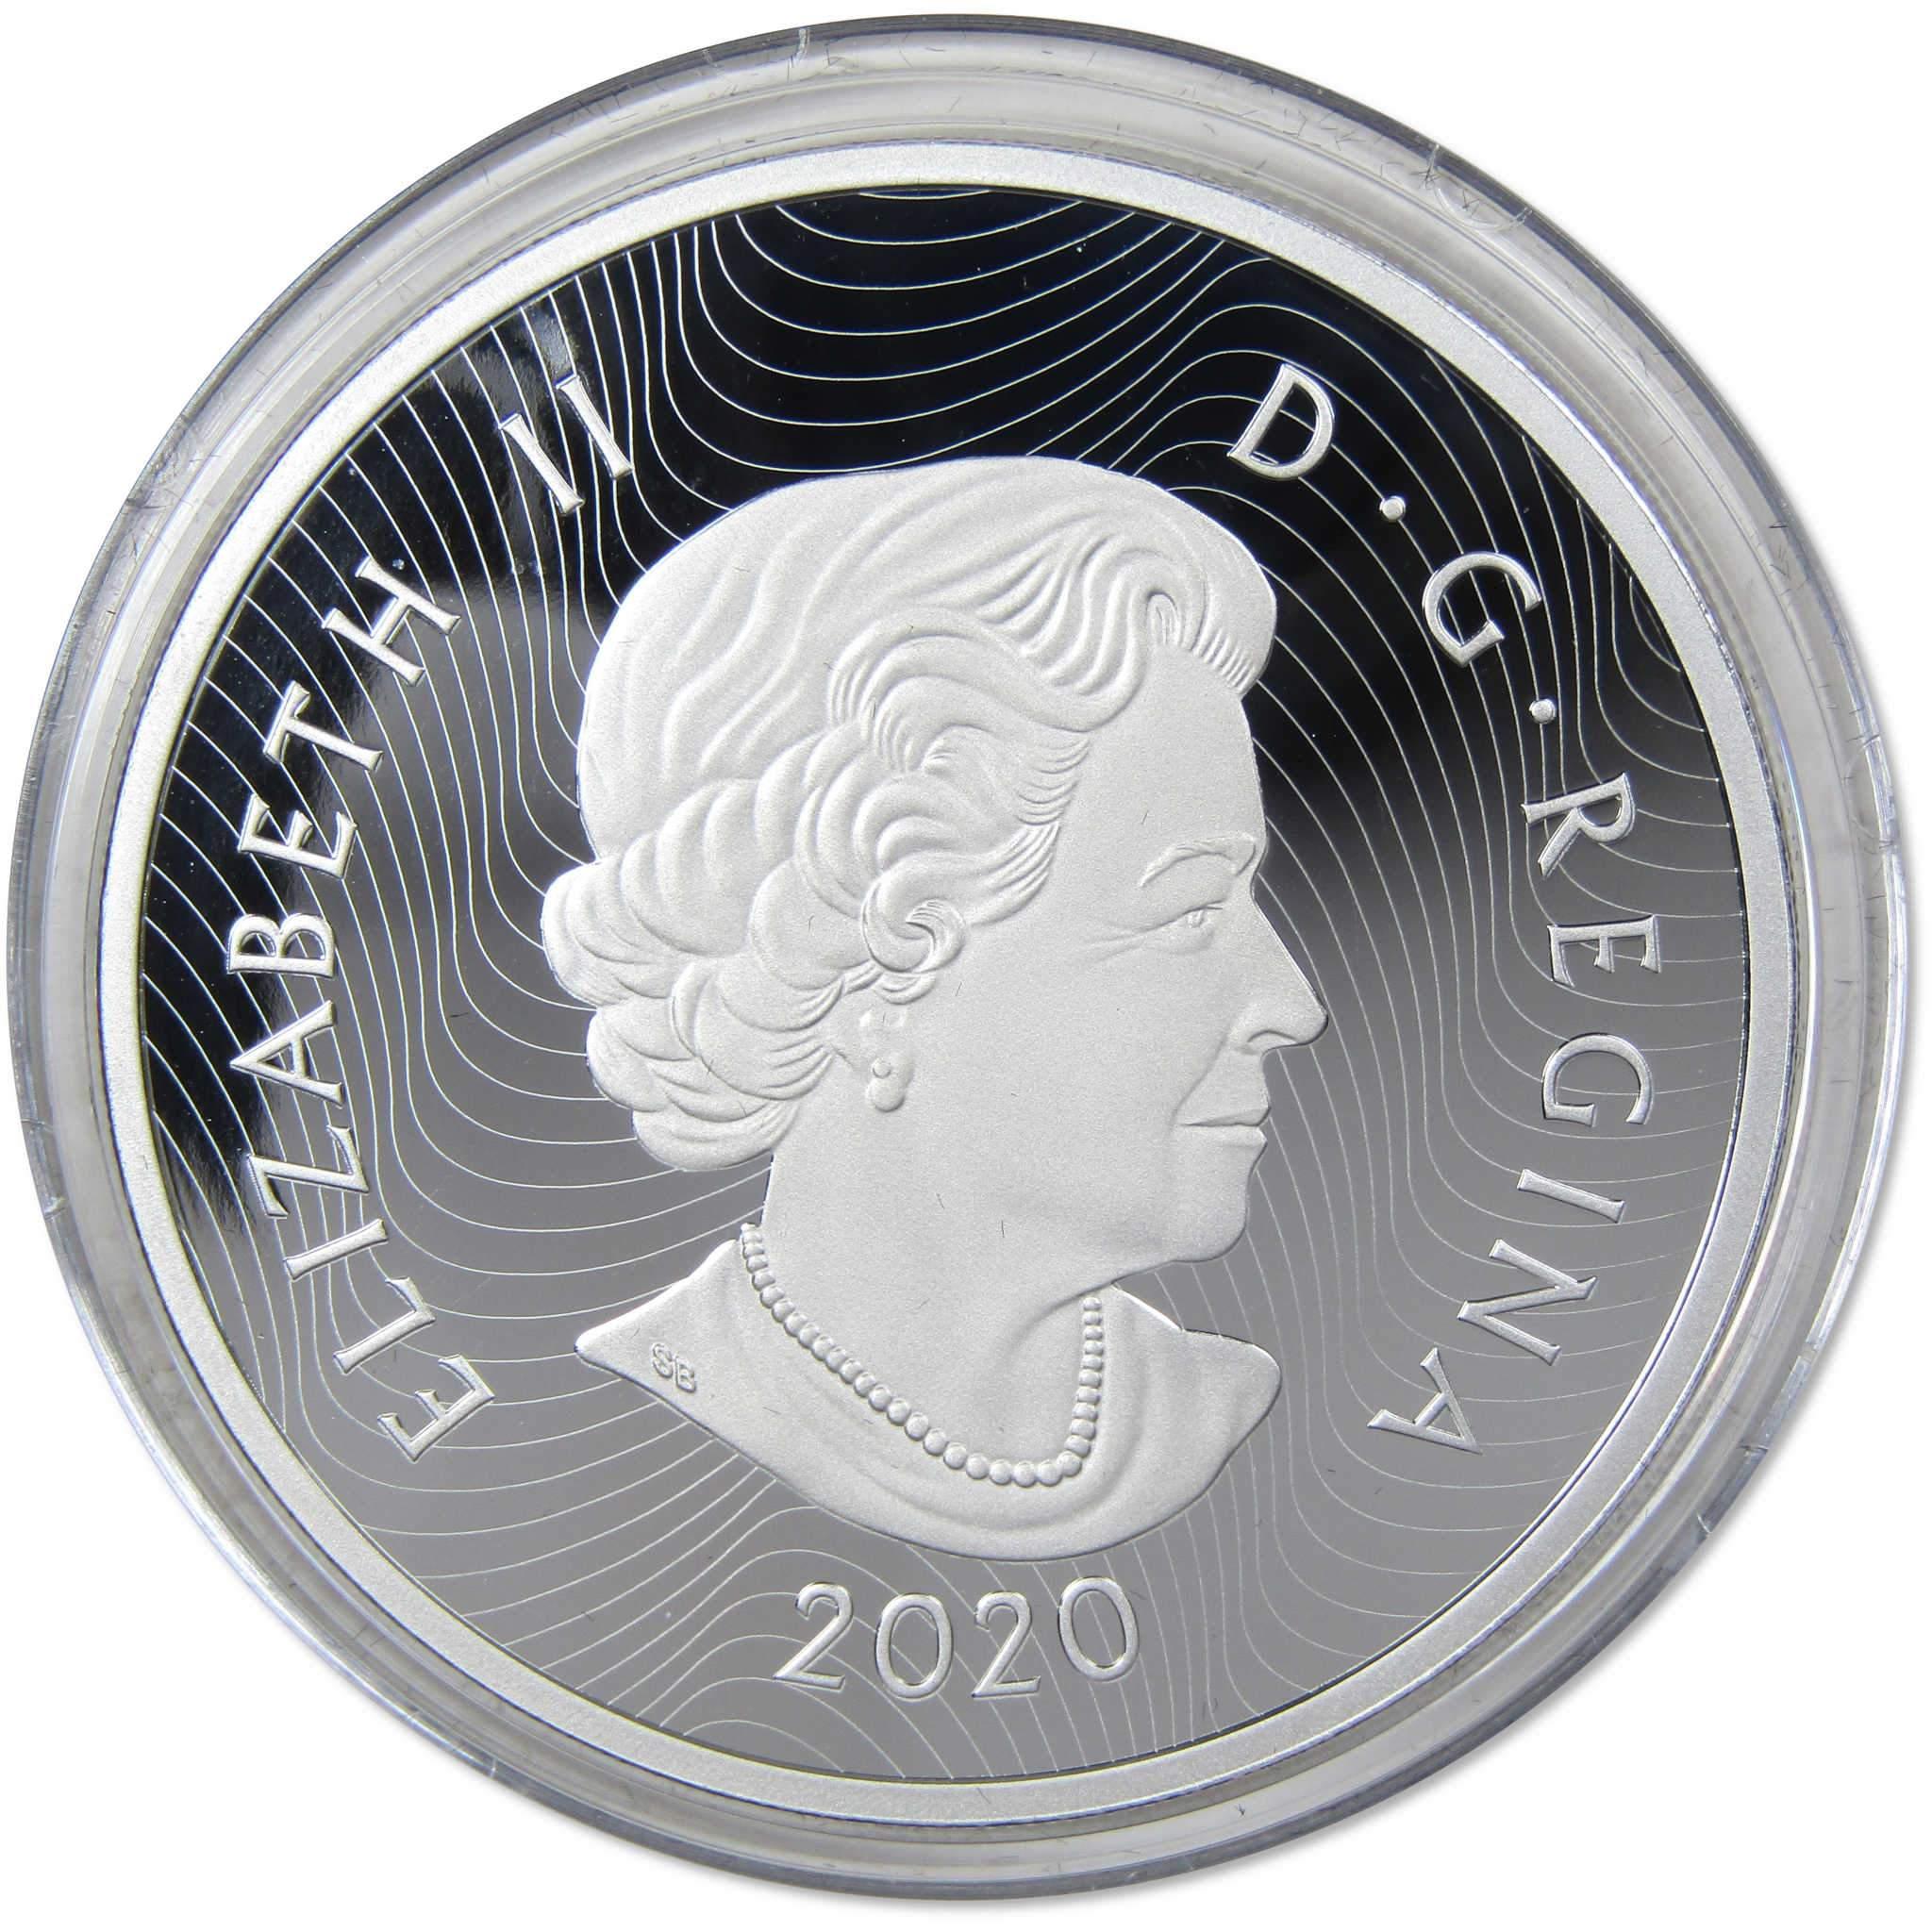 Bighorn Sheep $30 2 oz .9999 Silver $30 Colorized Proof Coin 2020 Canada COA